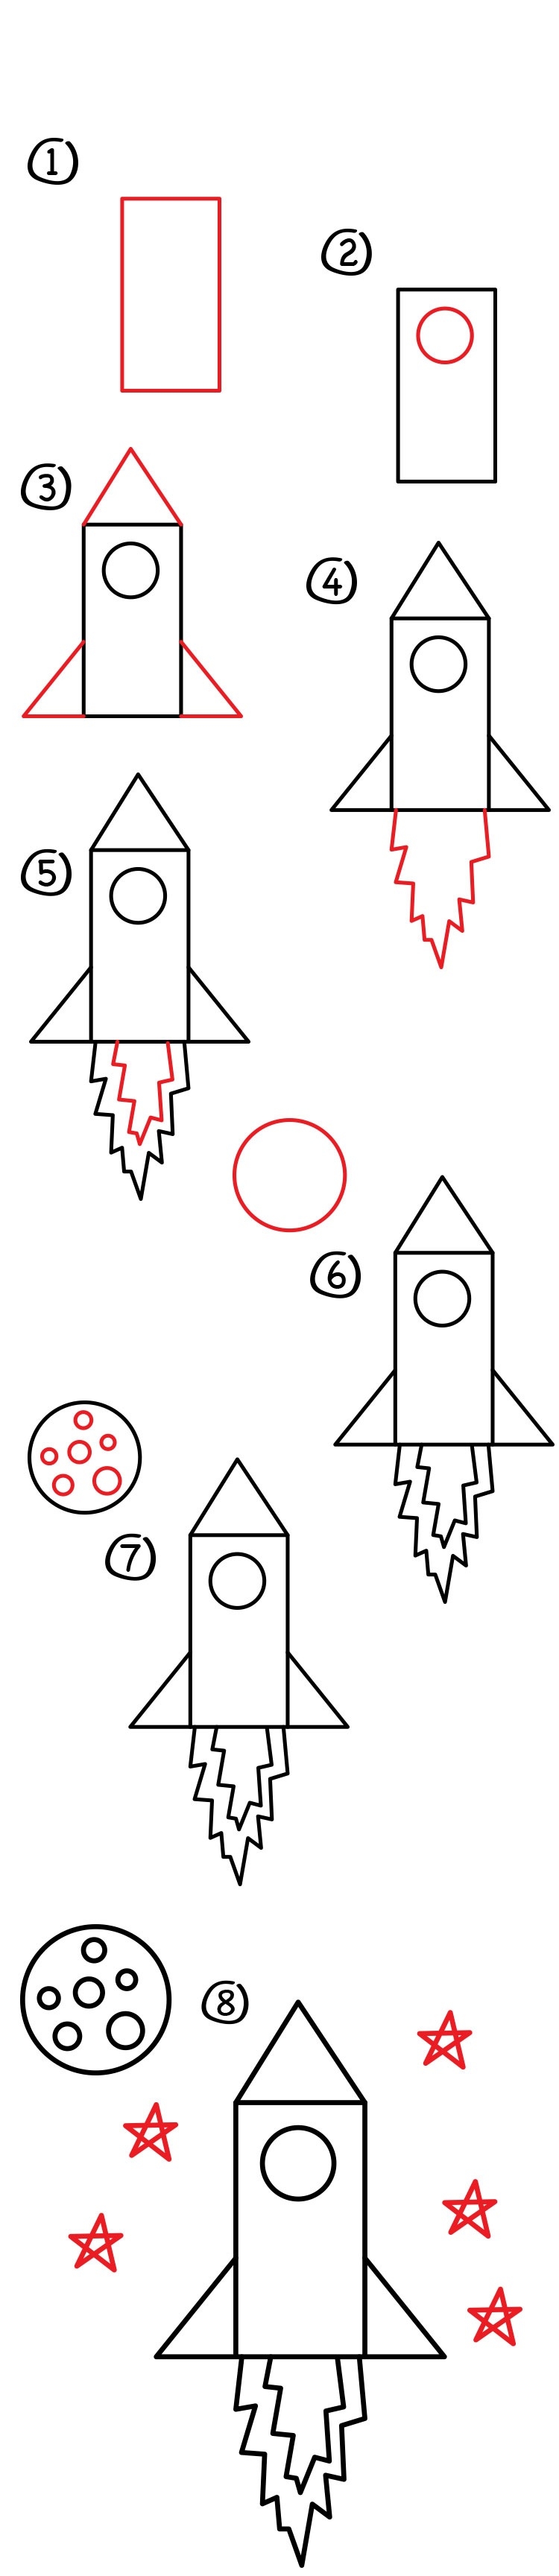 Нарисовать ракету поэтапно для детей. Как нарисовать ракету пошагово для детей. Пошаговое рисование ракеты для детей. Как нарисовать ракету для детей. Ракета для рисования для детей.